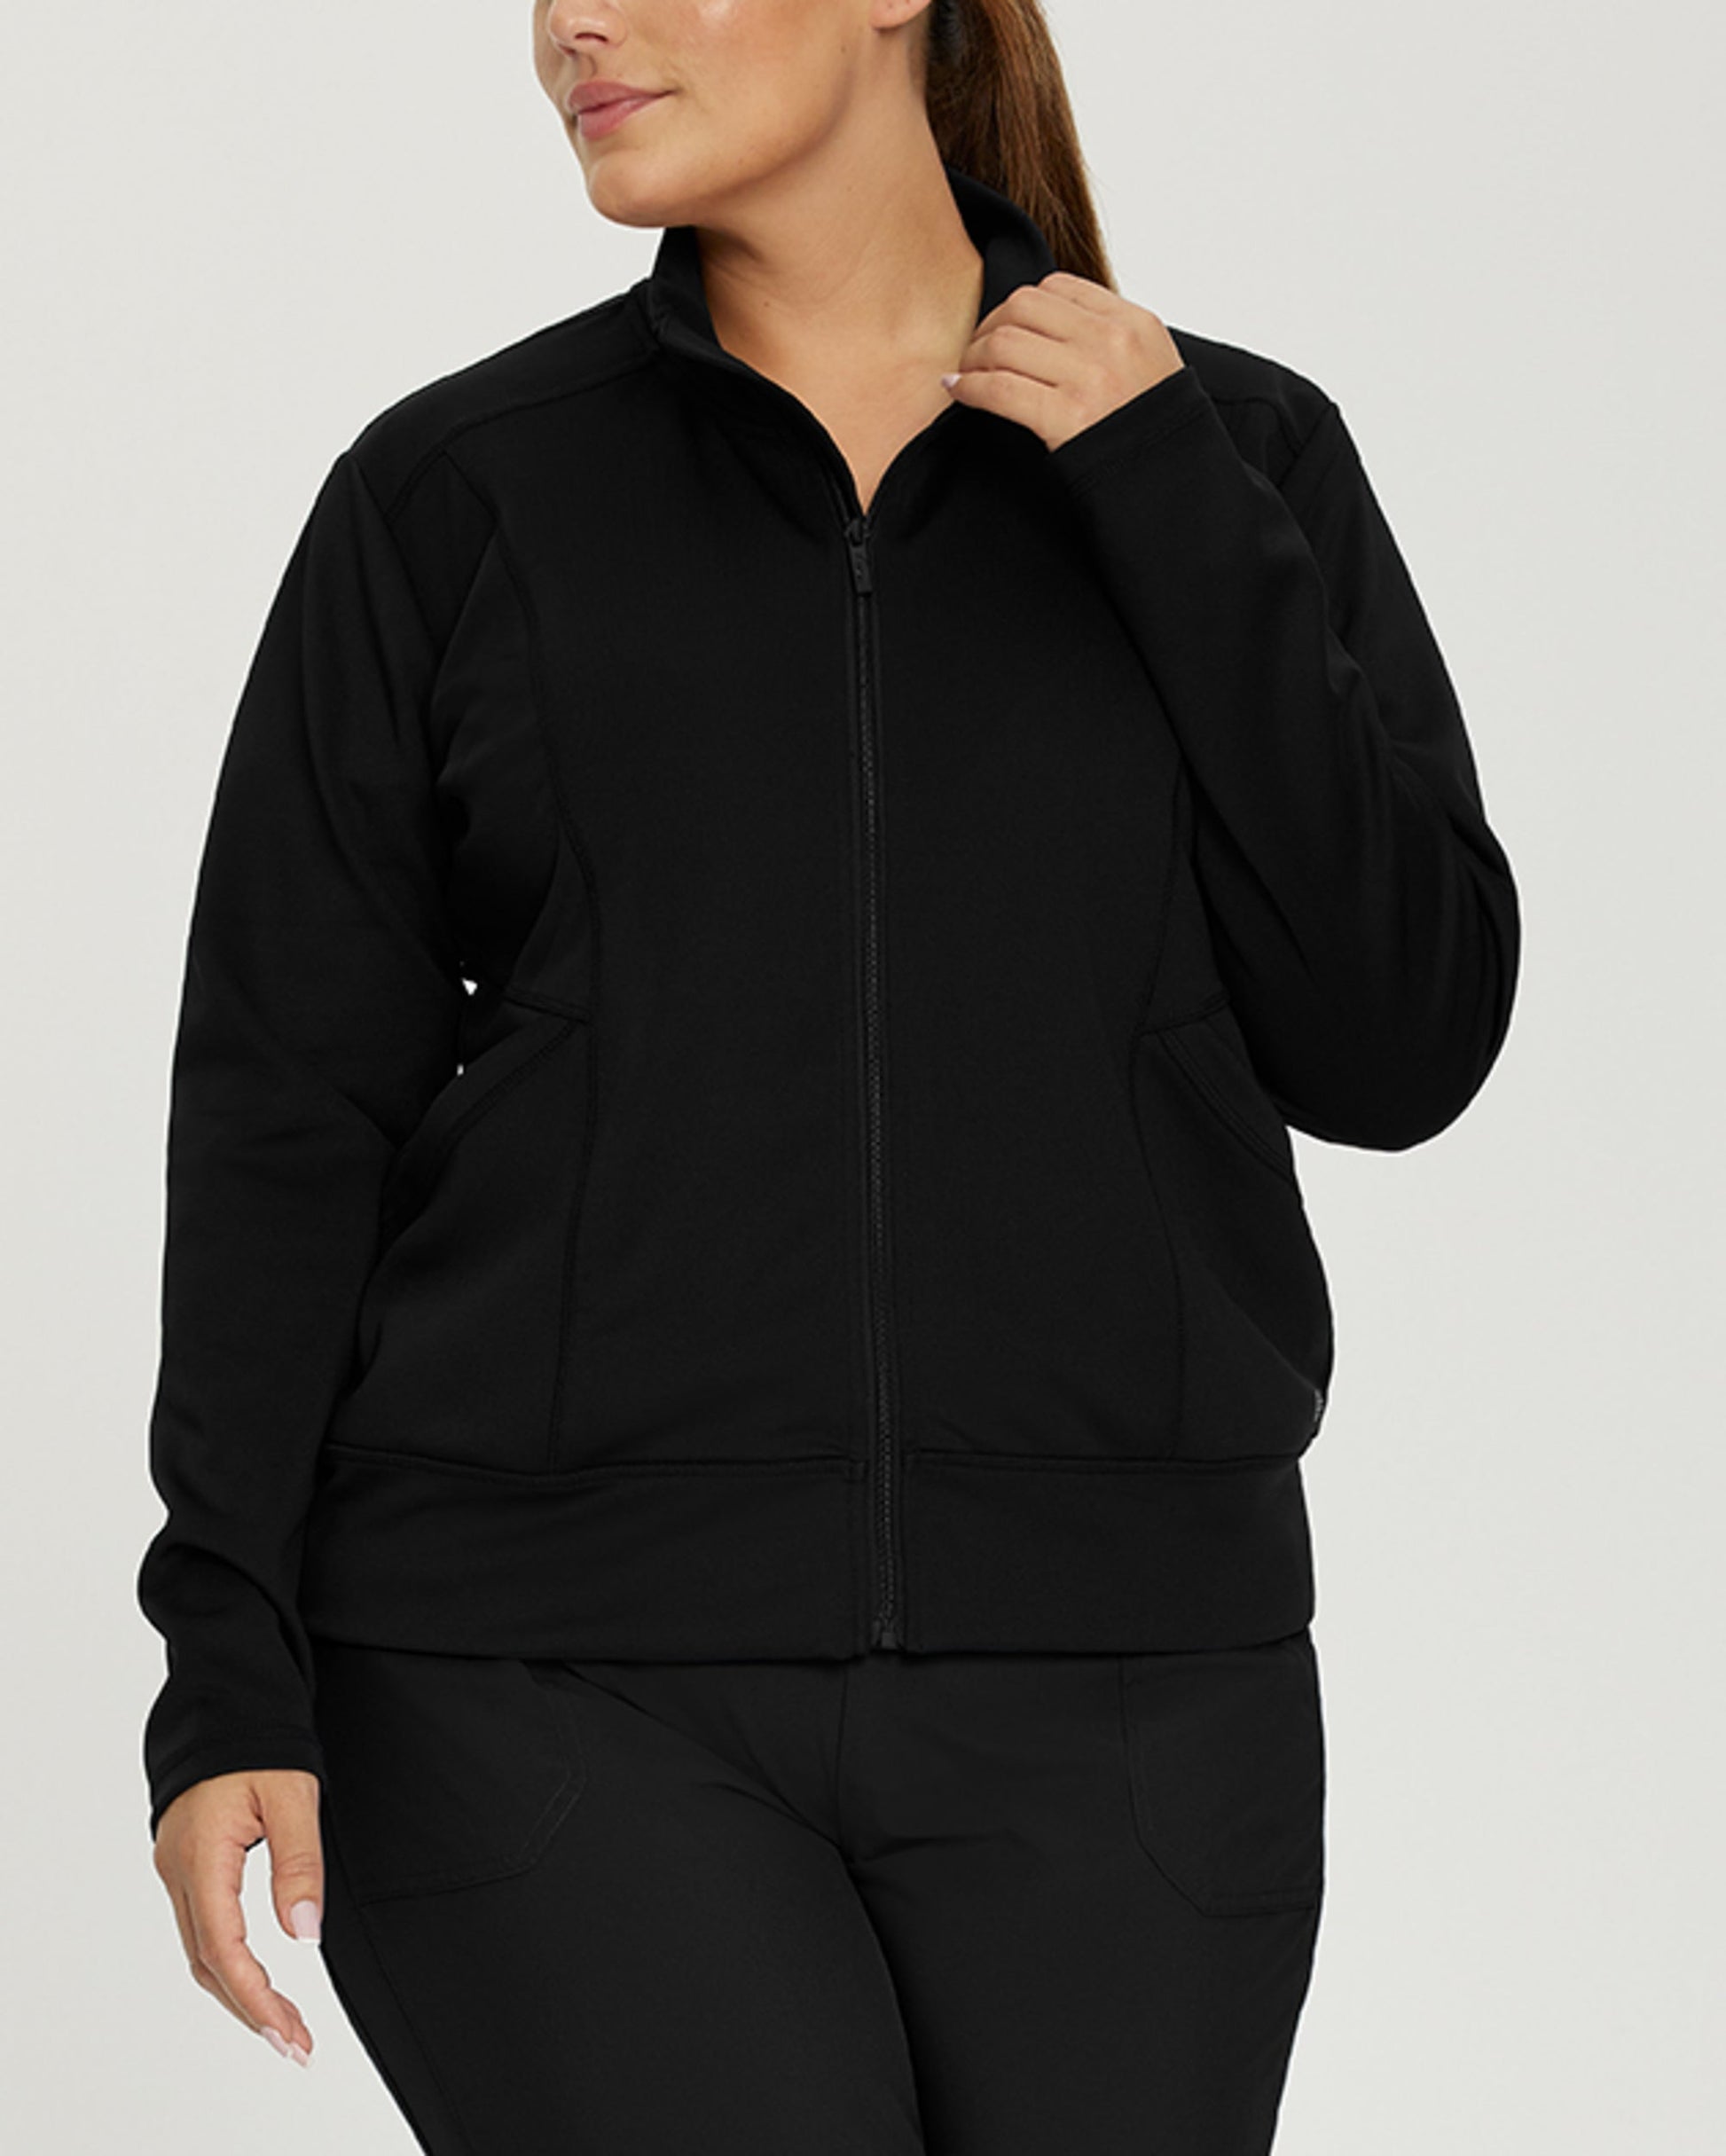 Scuba jacket in stretch modal - black